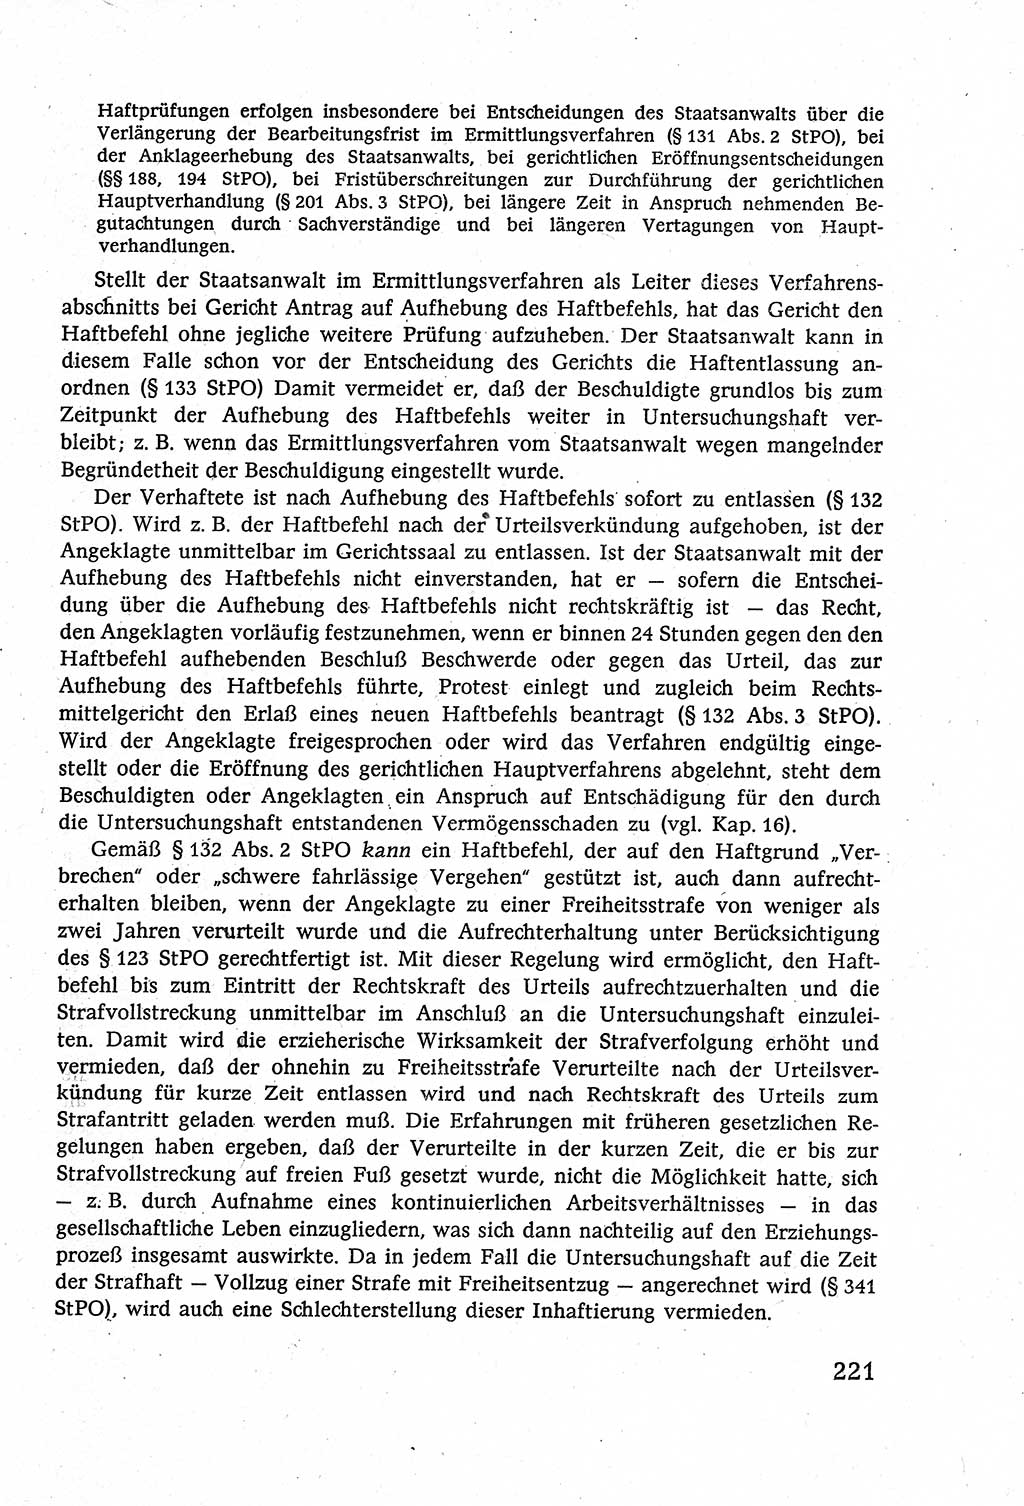 Strafverfahrensrecht [Deutsche Demokratische Republik (DDR)], Lehrbuch 1977, Seite 221 (Strafverf.-R. DDR Lb. 1977, S. 221)